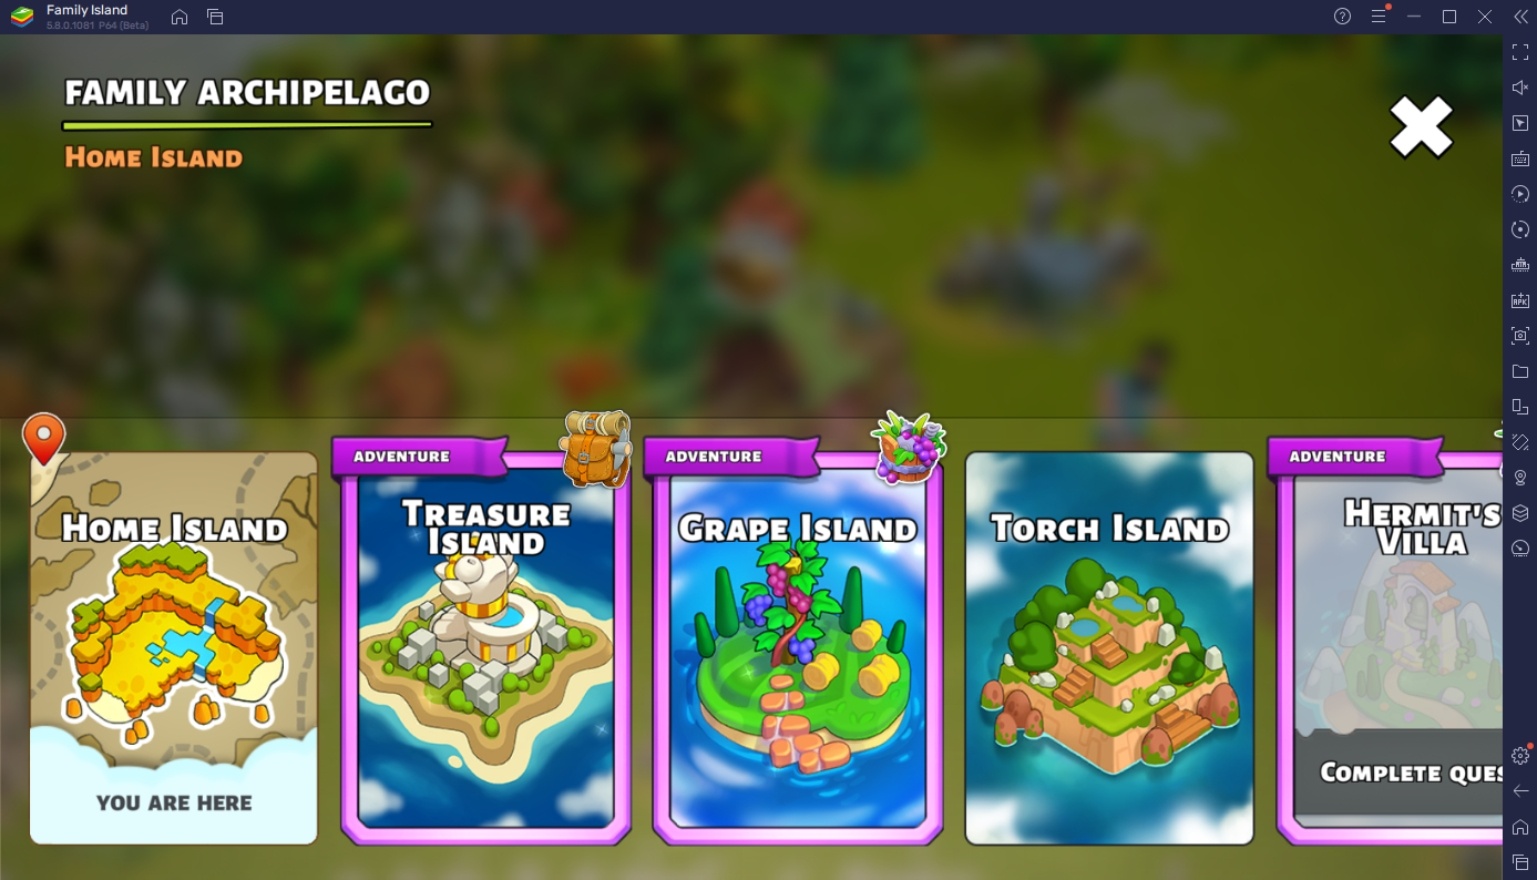 أسرع طريقة للوصول إلى المستوى الأعلى في Family Island -  Farming game